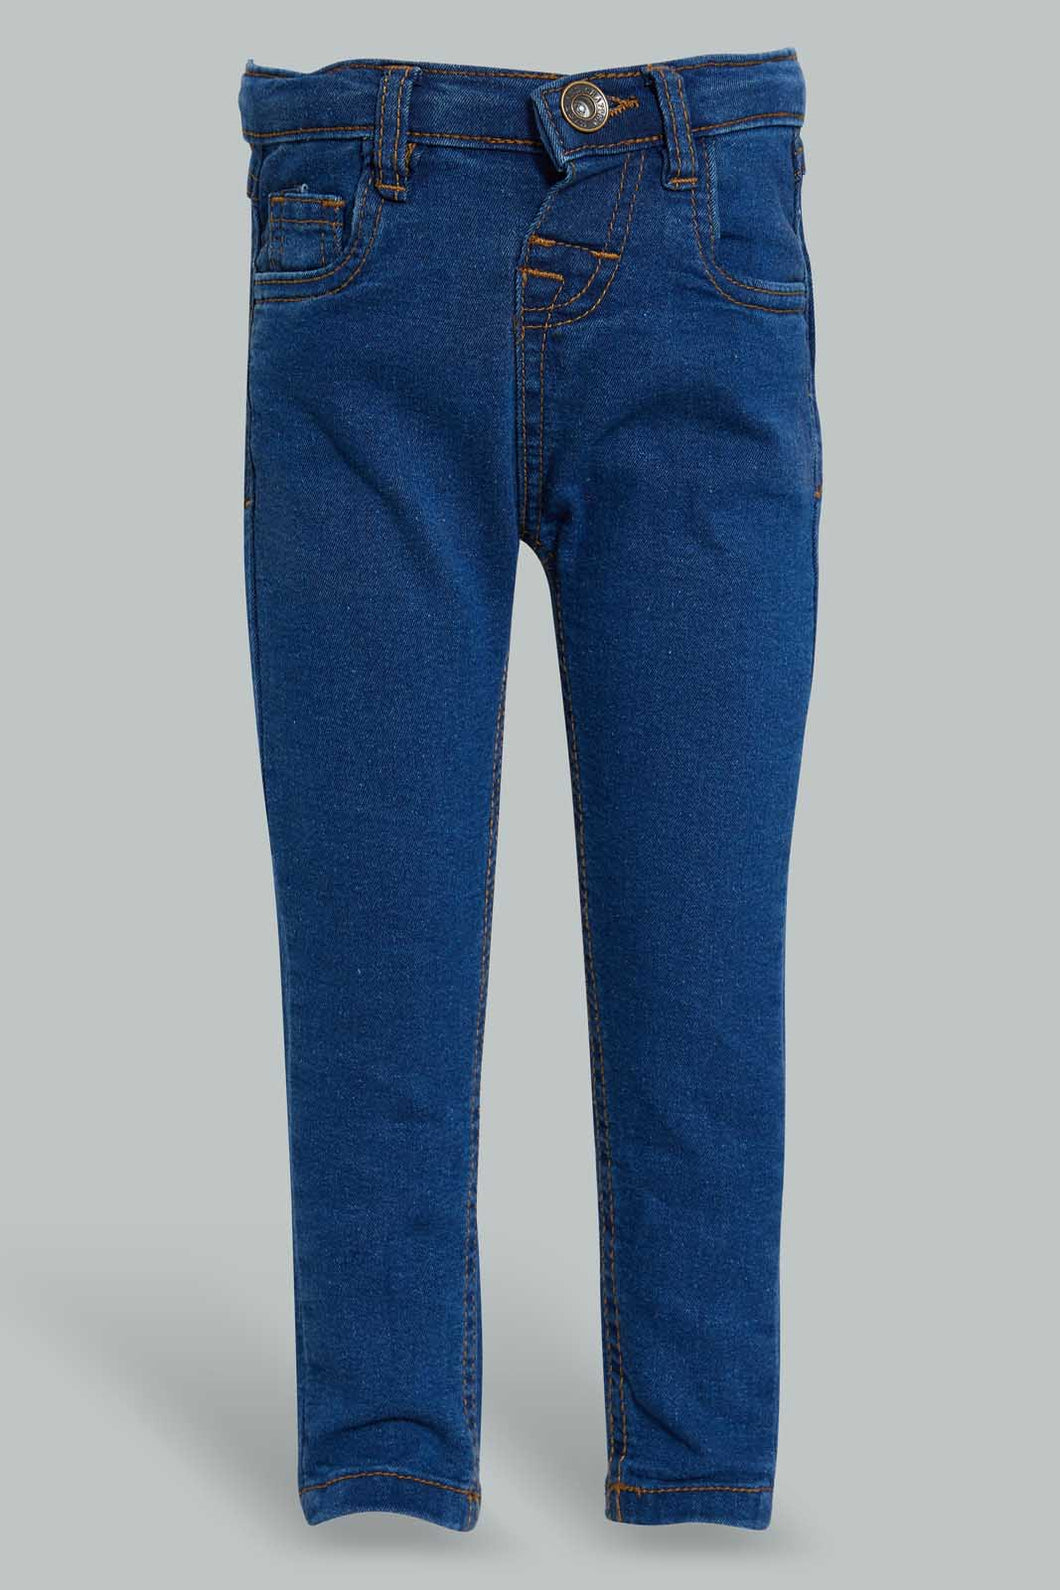 Blue Basic Slim For Jean For Baby Boys بنطلون جينز باللون الأزرق سليم فت للأولاد الصغار